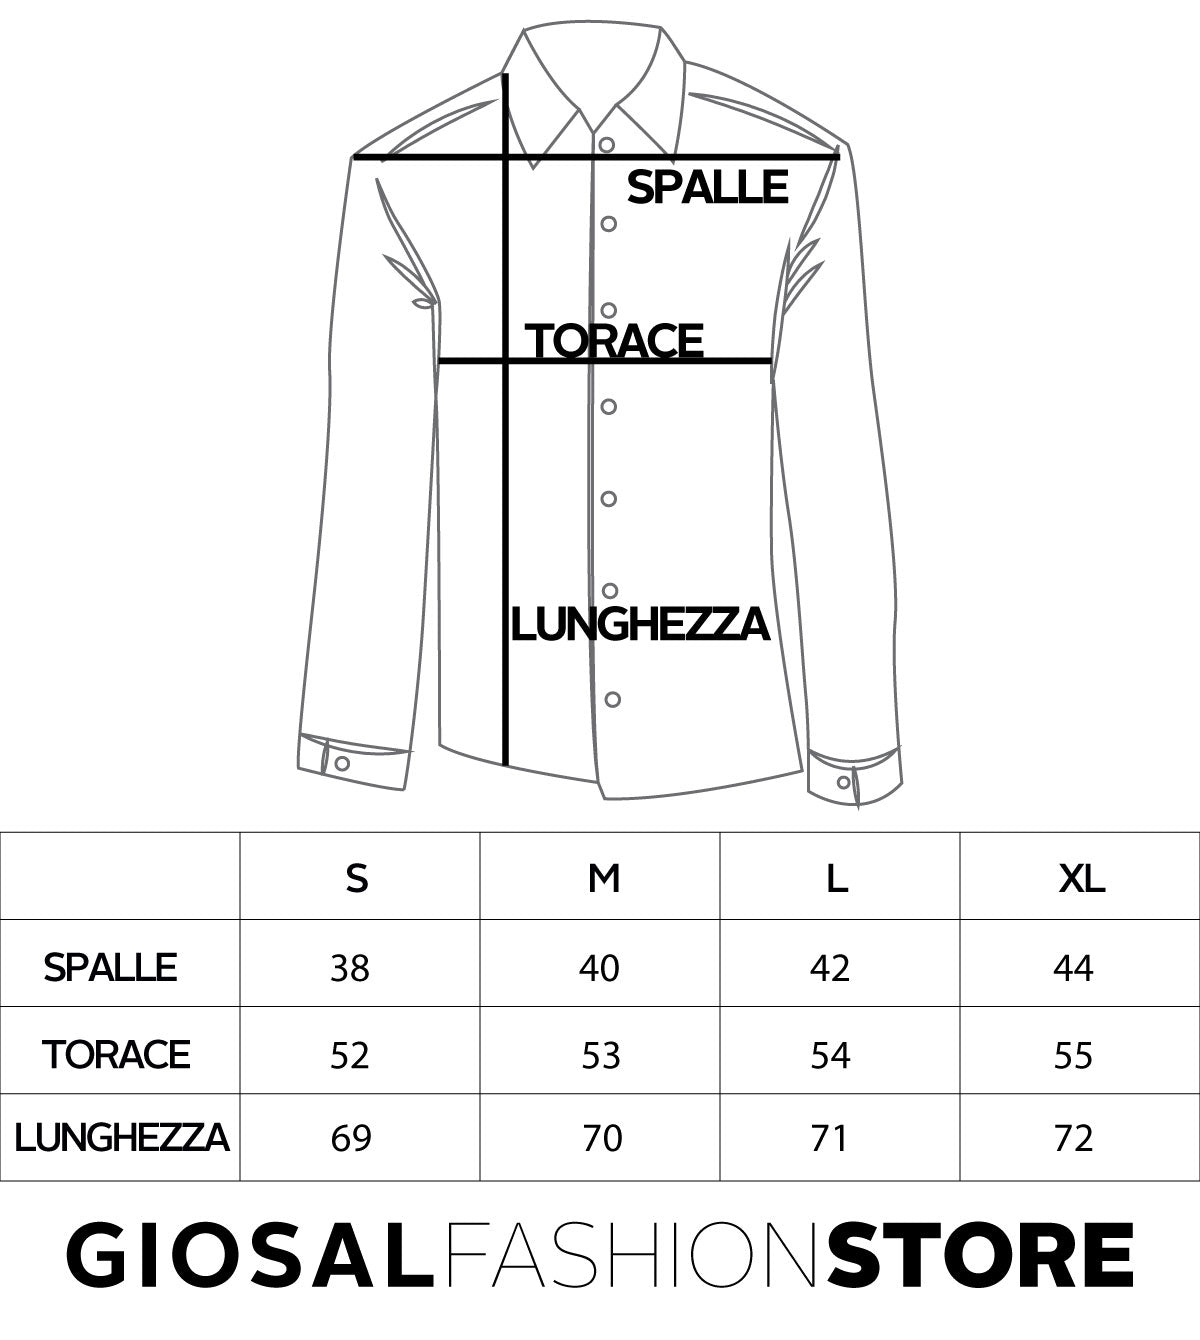 Camicia Uomo Con Colletto Manica Lunga Slim Fit Casual Cotone Fantasia Pois Blu GIOSAL-C1468A